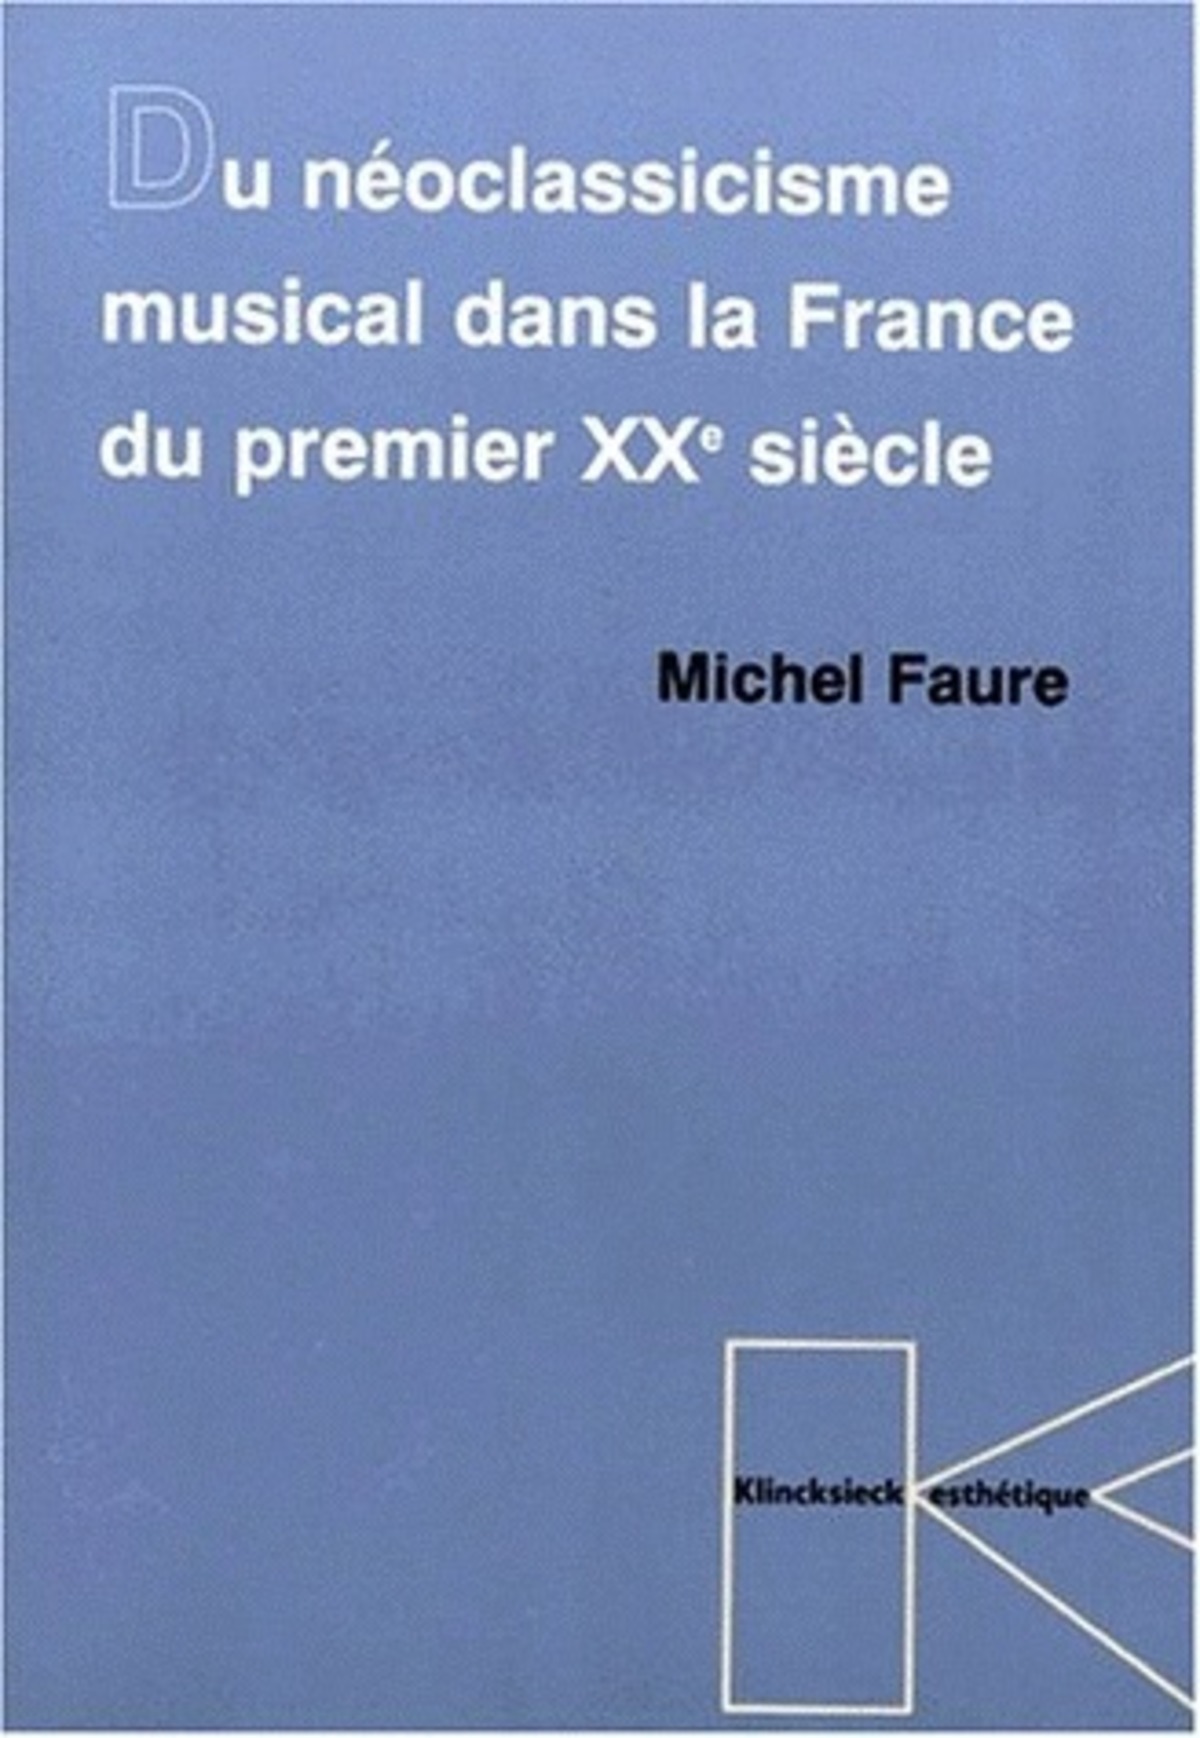 Du Néoclassicisme musical dans la France du premier XXe siècle